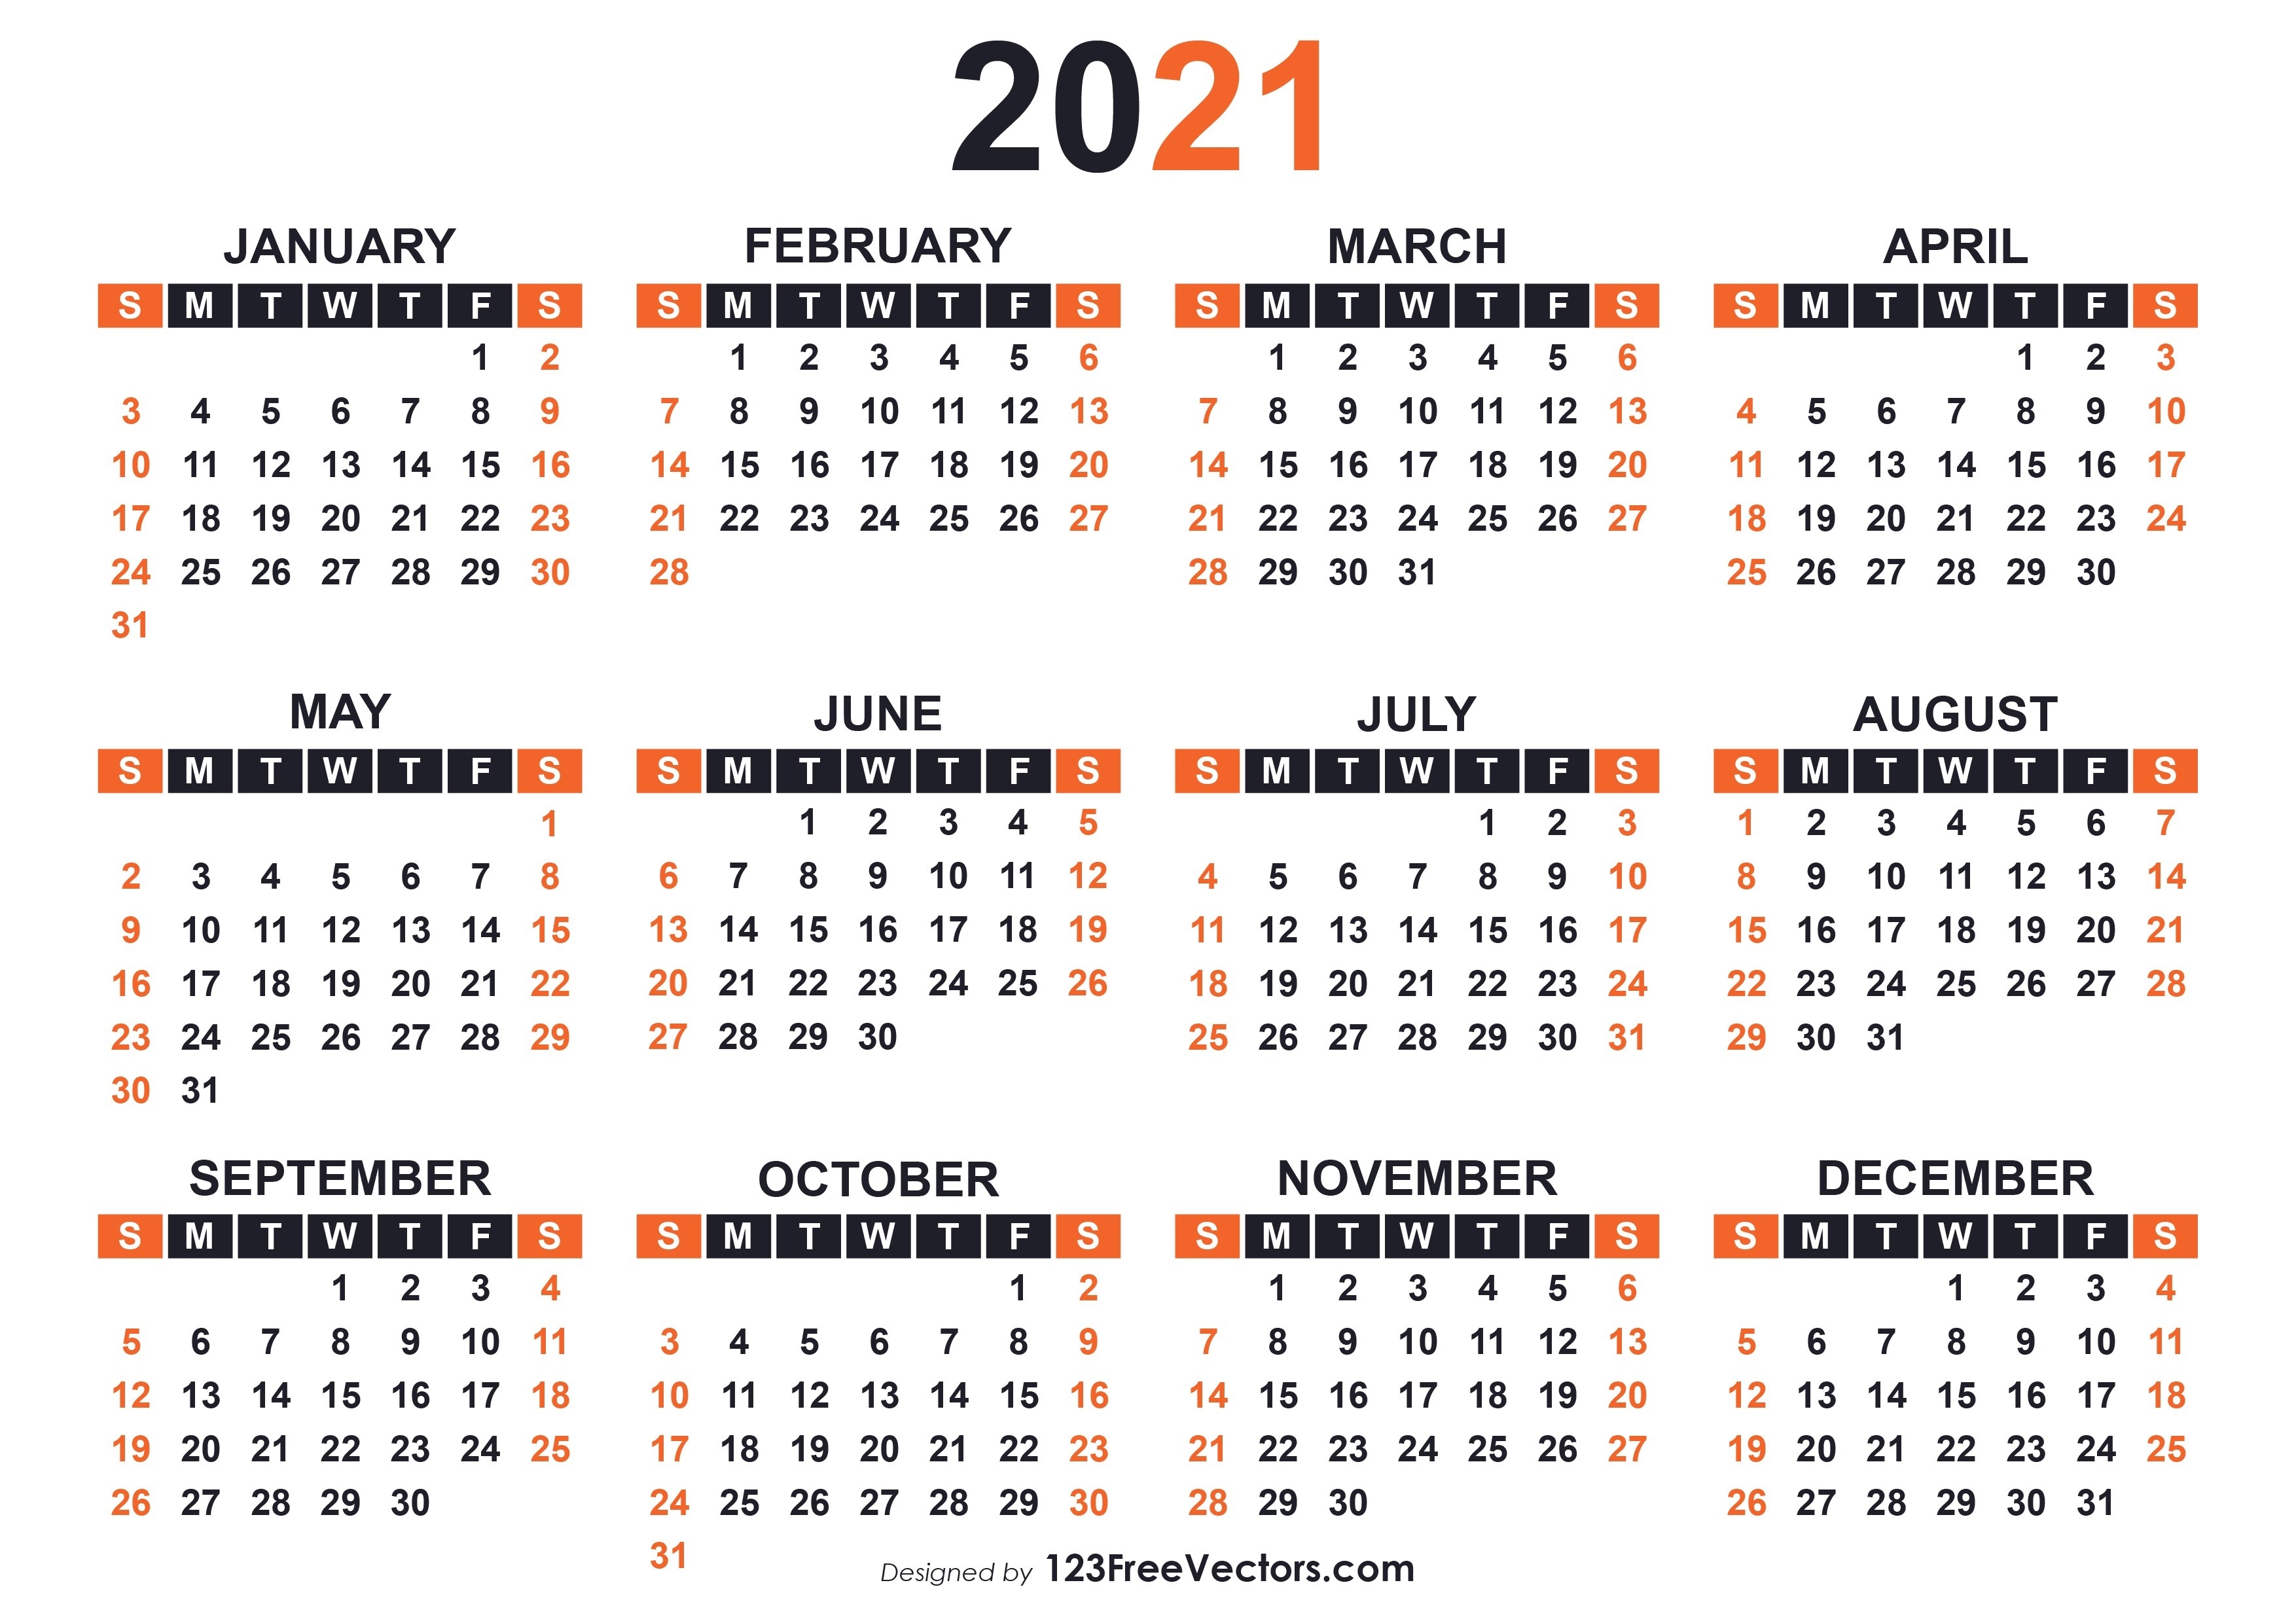 210+ 2021 Calendar Vectors | Download Free Vector Art Calendar Template Vector Free Download